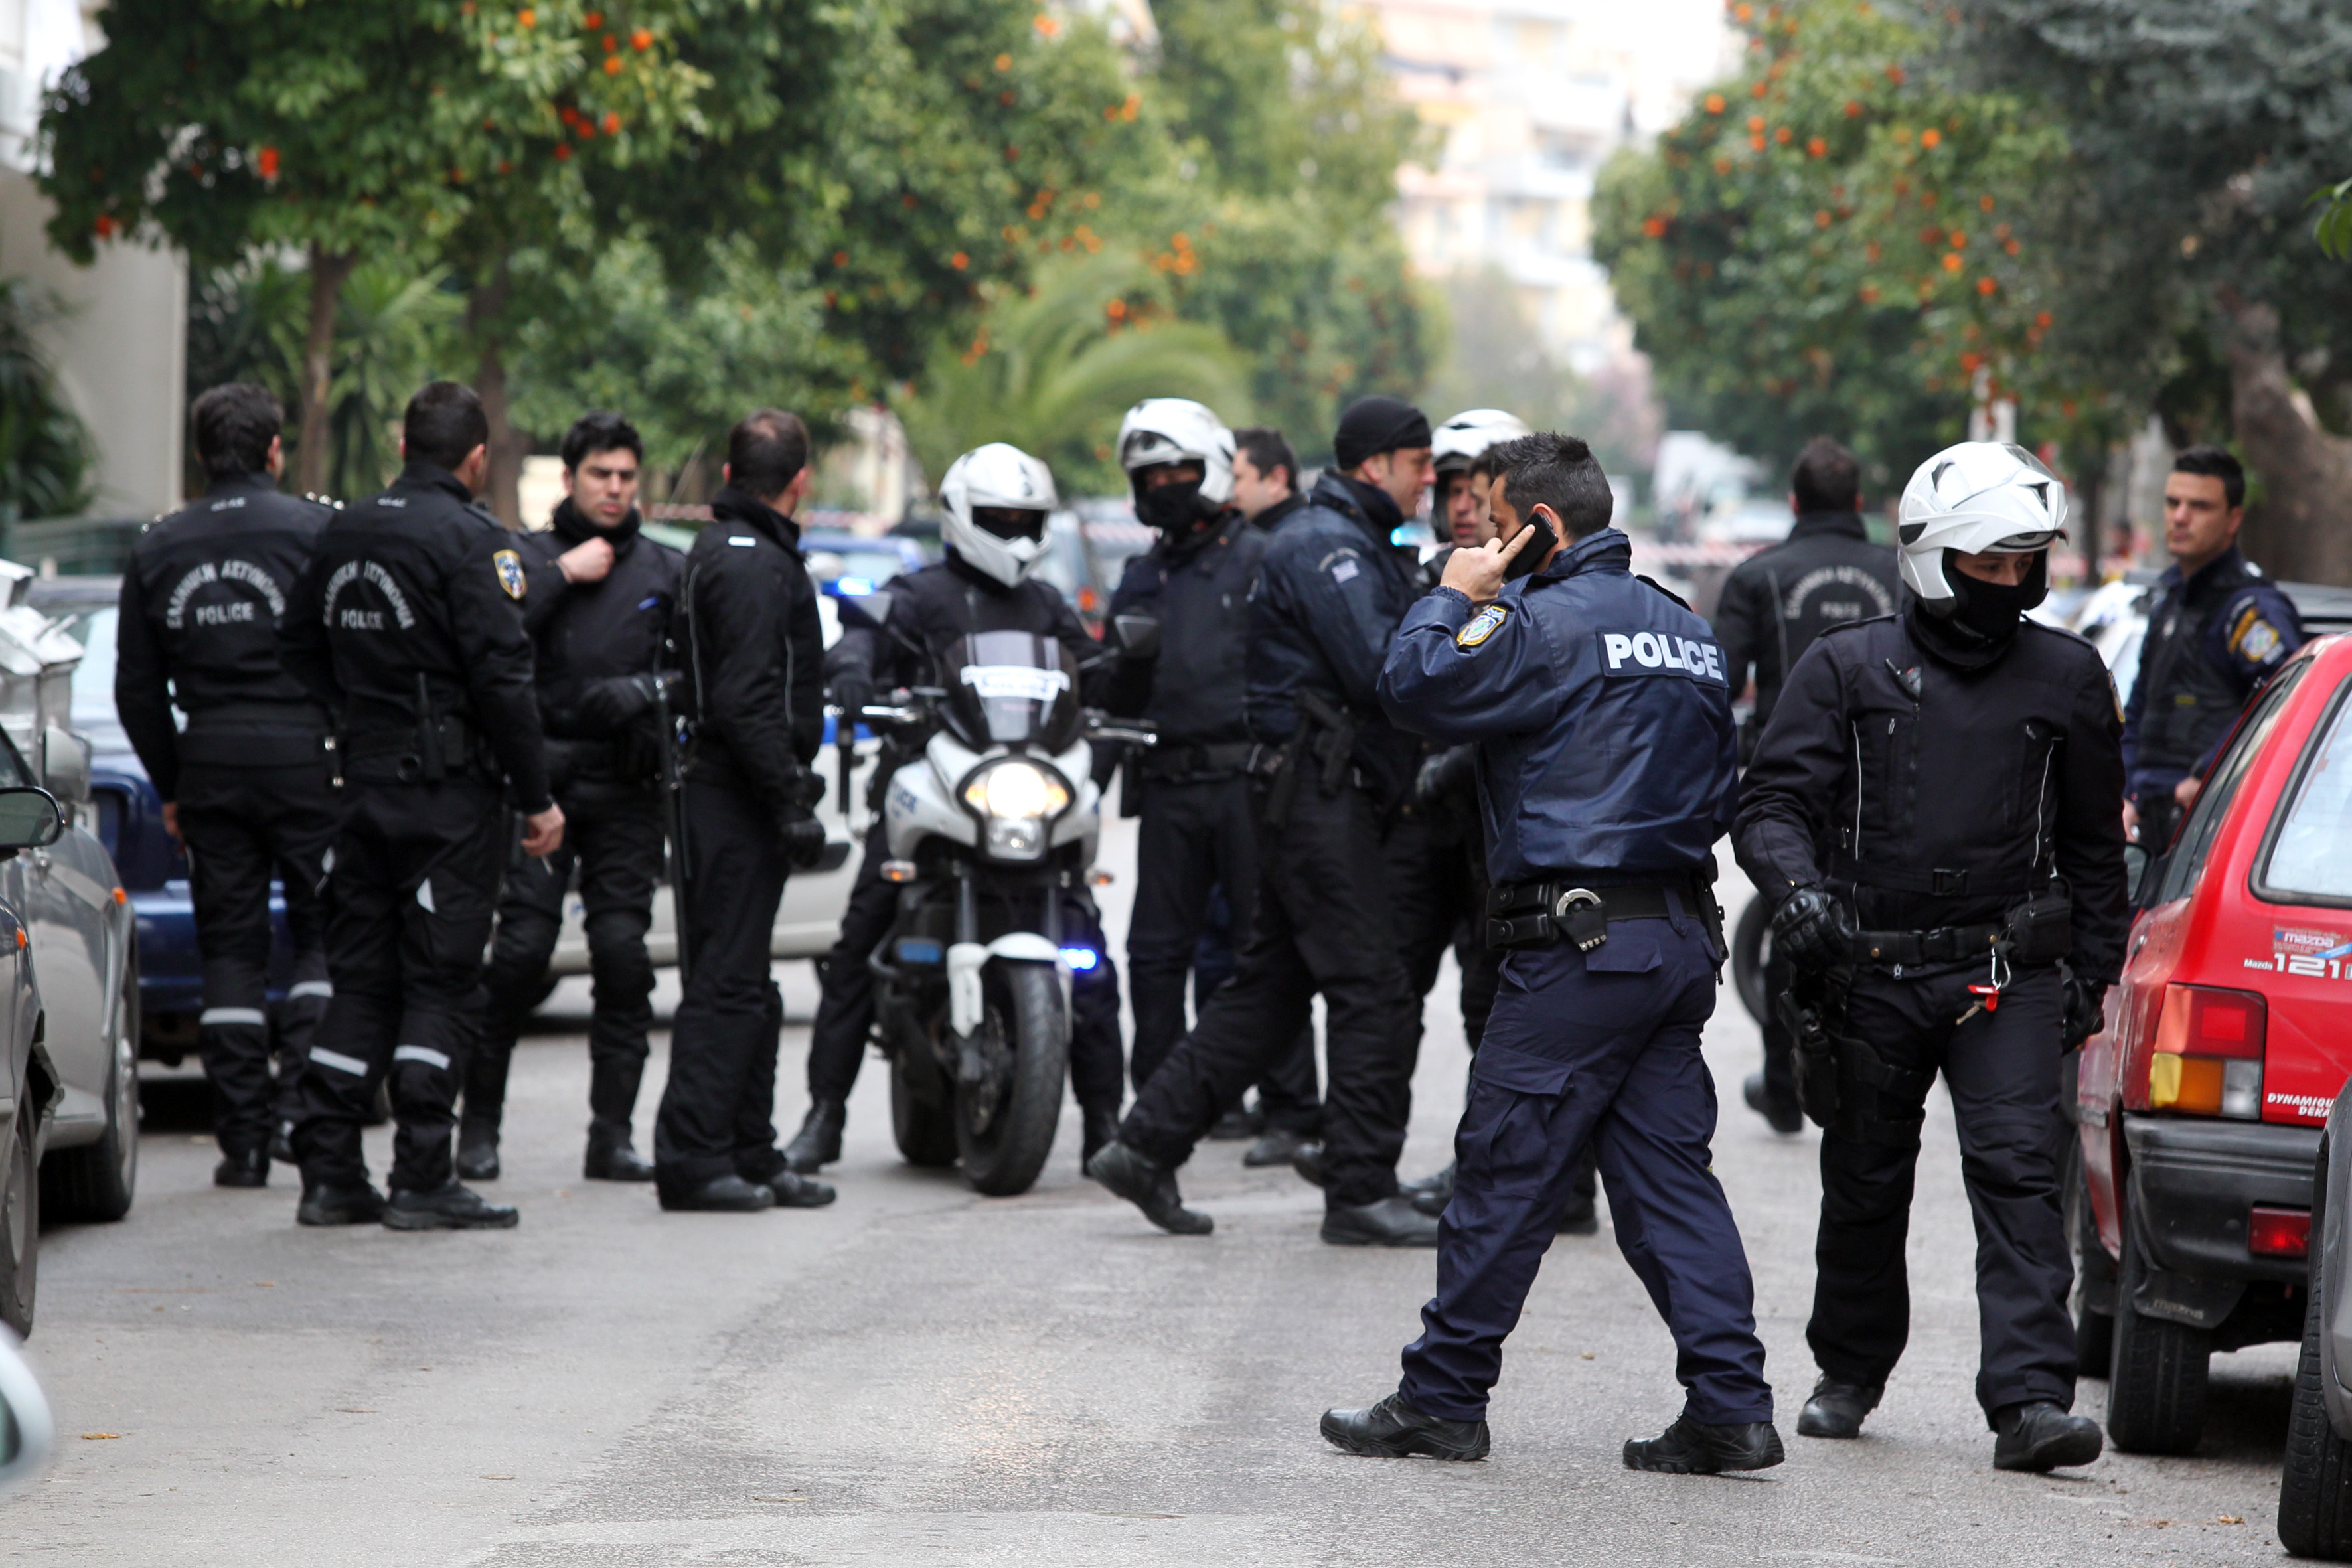 Πυροβολισμοί εναντίον της ομάδας Δίας στην οδό Μιχαλακοπούλου το ξημέρωμα του Μ. Σαββάτου